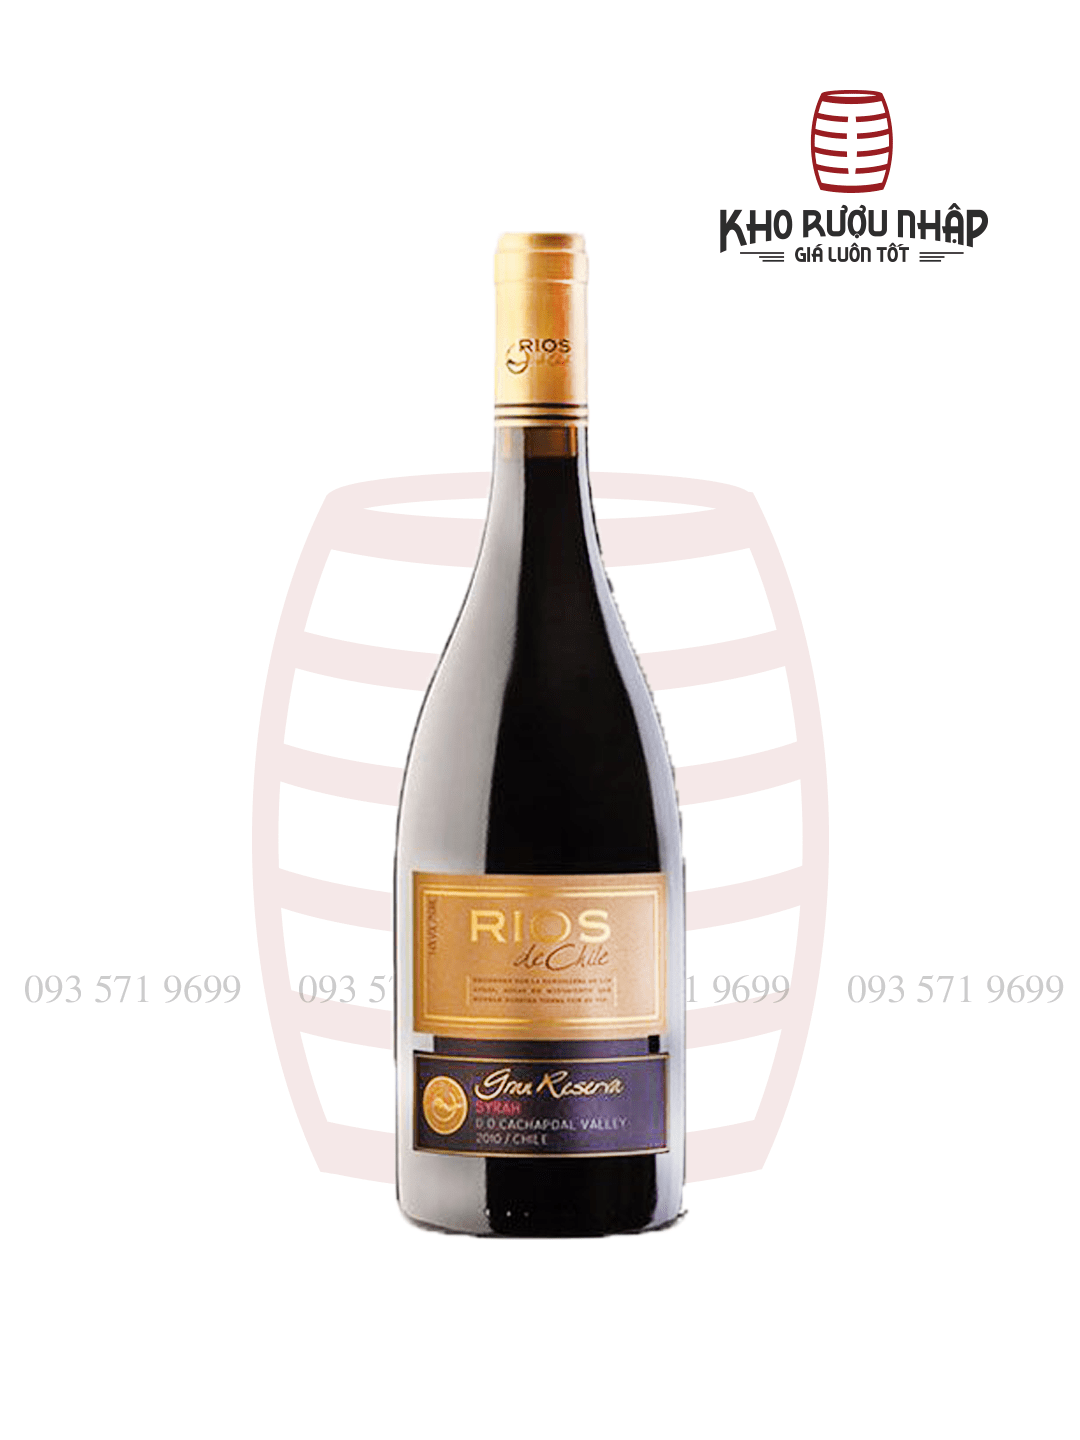 Rượu Vang Rios Grand Reserva – HP-650 Cao Cấp Nhập Khẩu